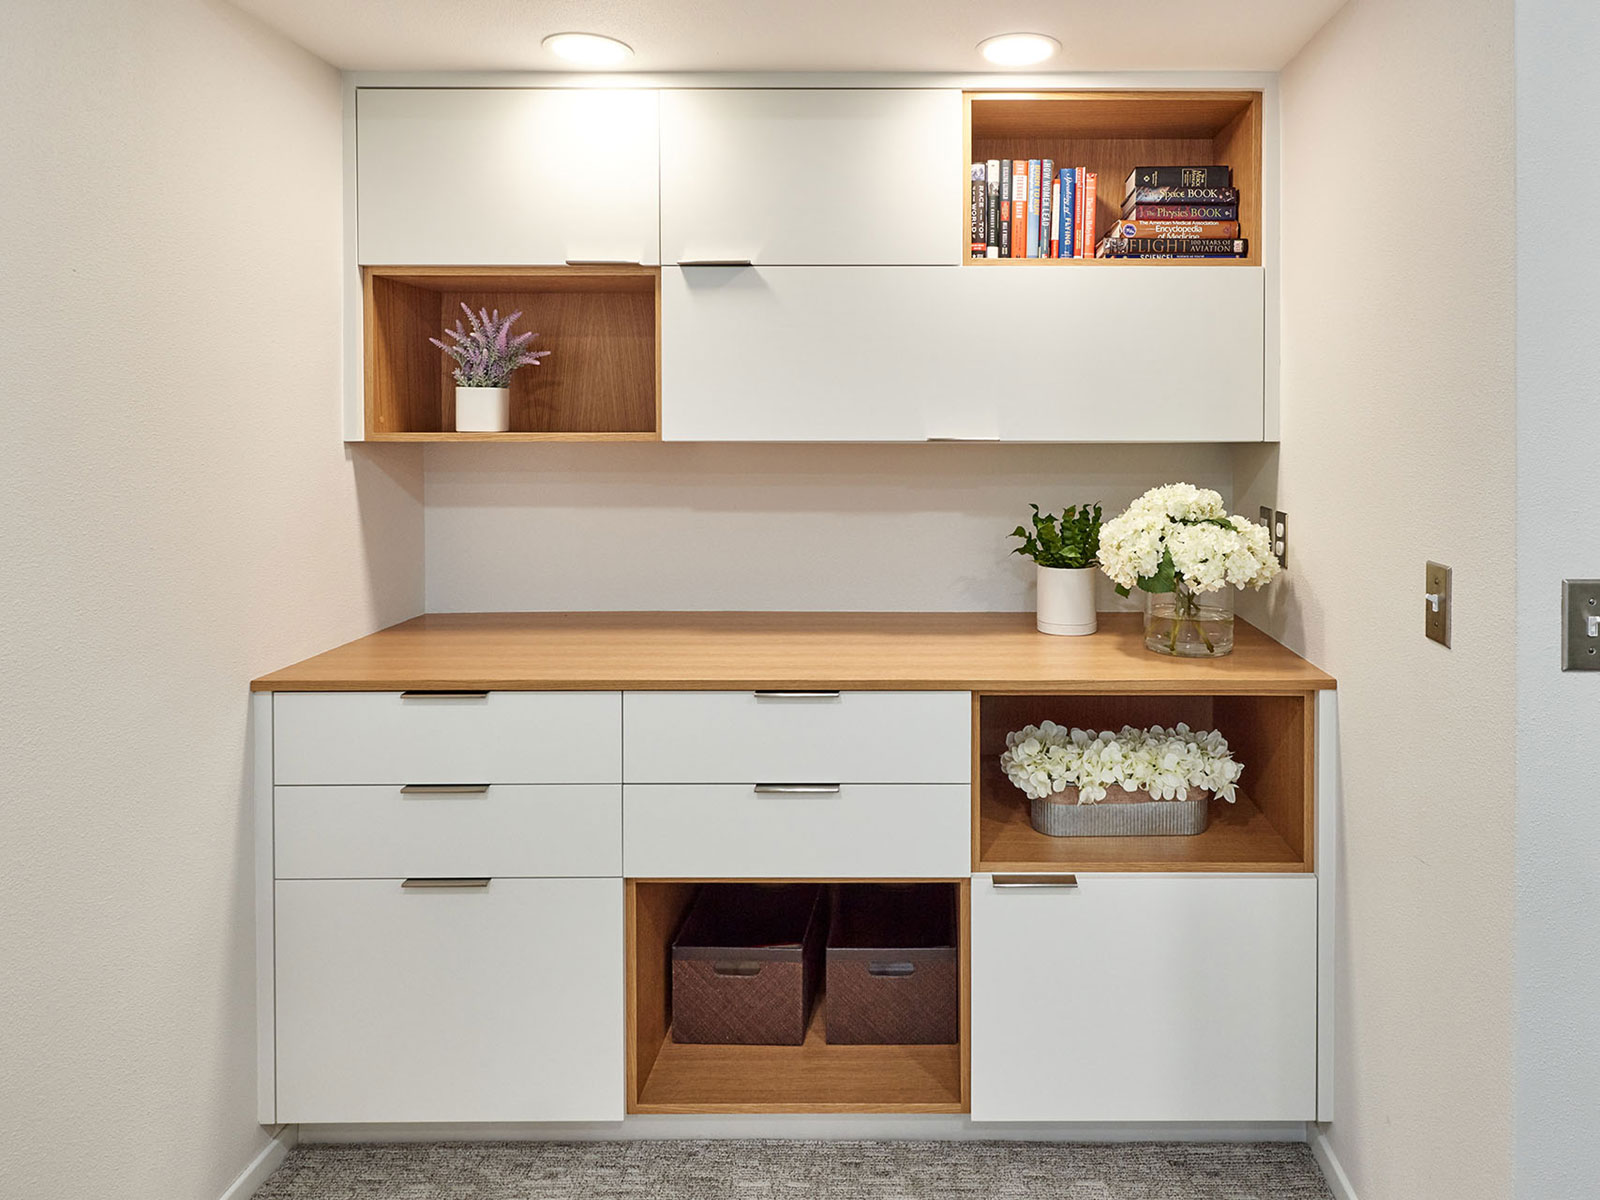 Basement remodel includes home office design. Custom home remodel from Henderer Design + Build + Remodel